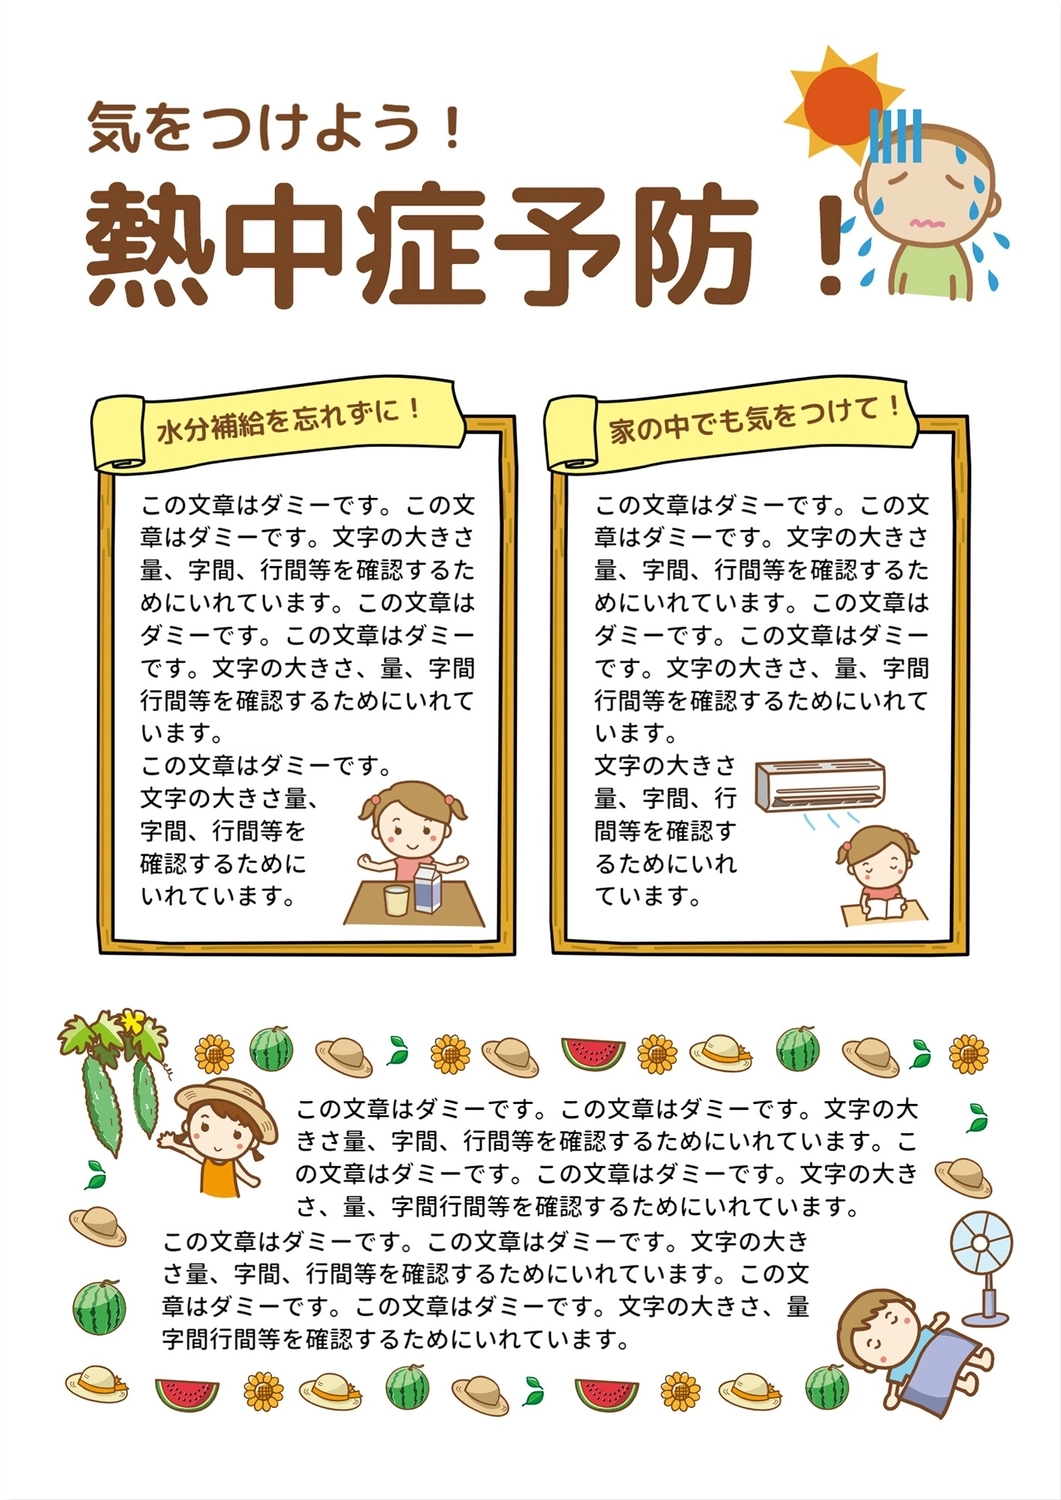 熱中症予防（イラスト）, boy, horizontal writing, vertical, News template